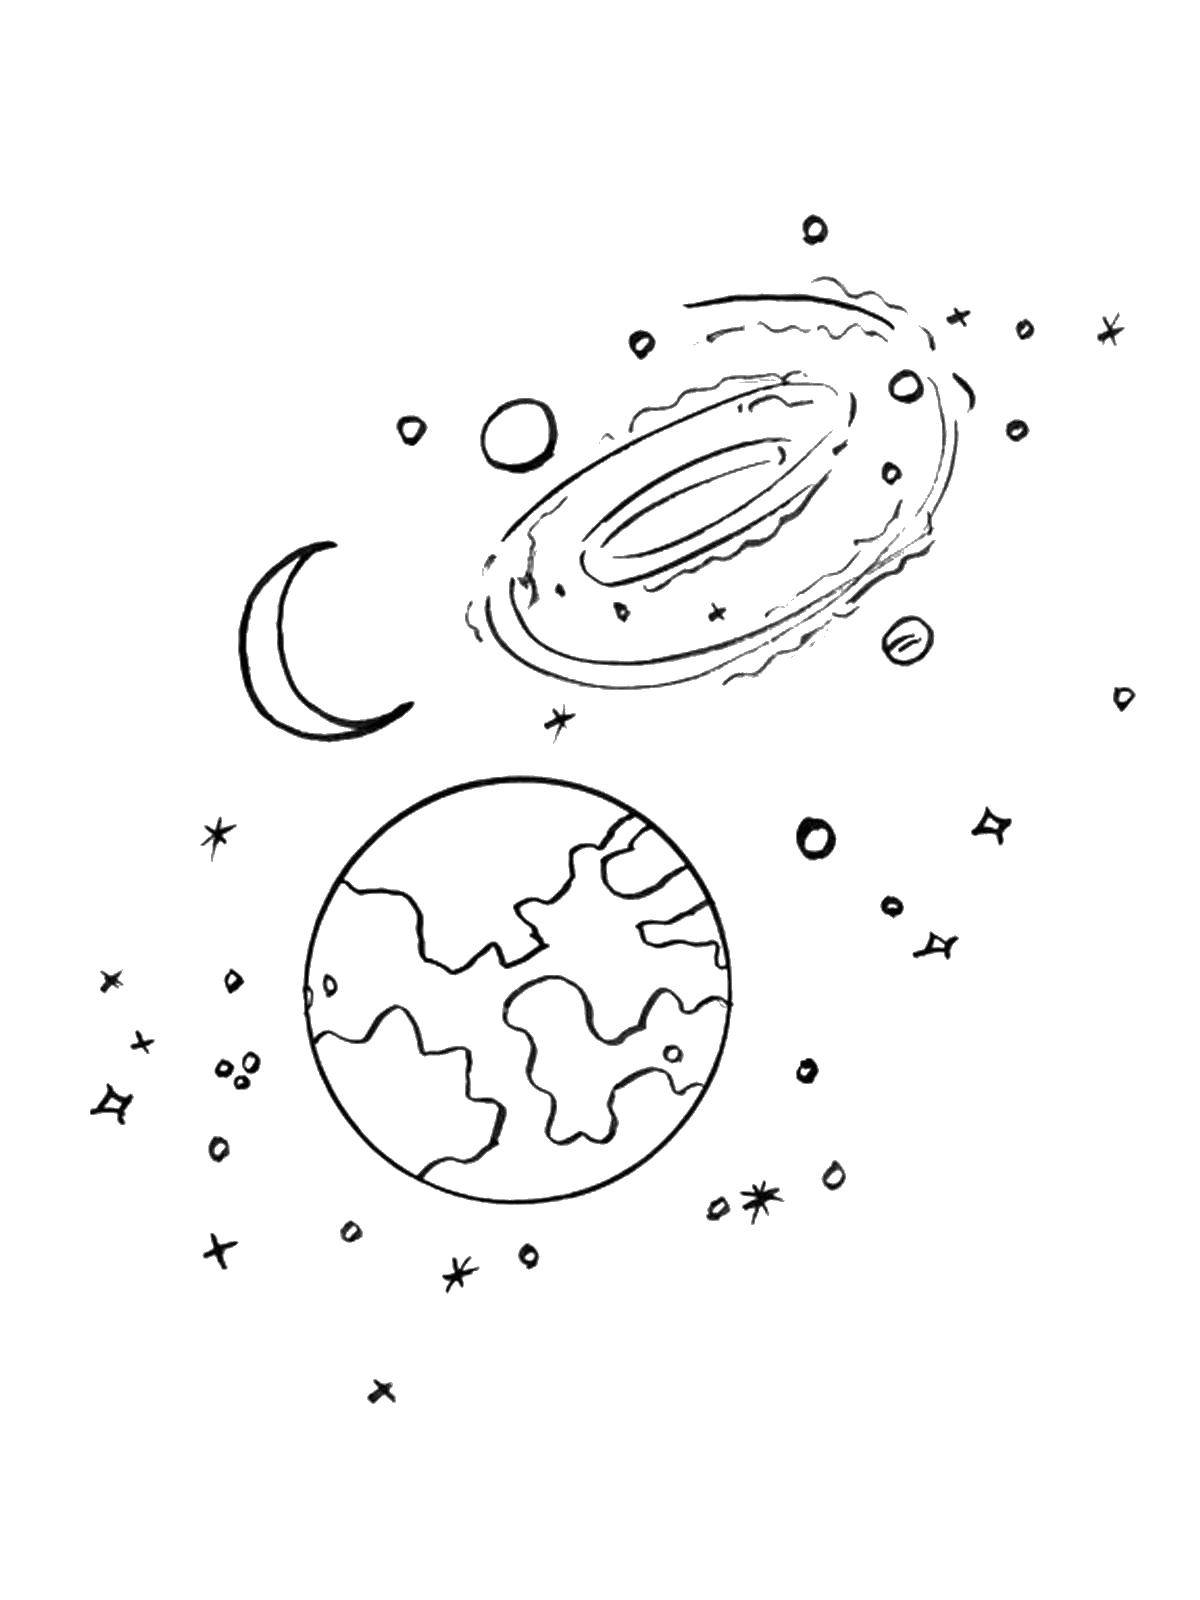 Розмальовки  Наша планета земля і місяць під вселеннной. Завантажити розмальовку Космок, планета, Всесвіт, Галактика, півмісяць, Місяць, зірки.  Роздрукувати ,космос,